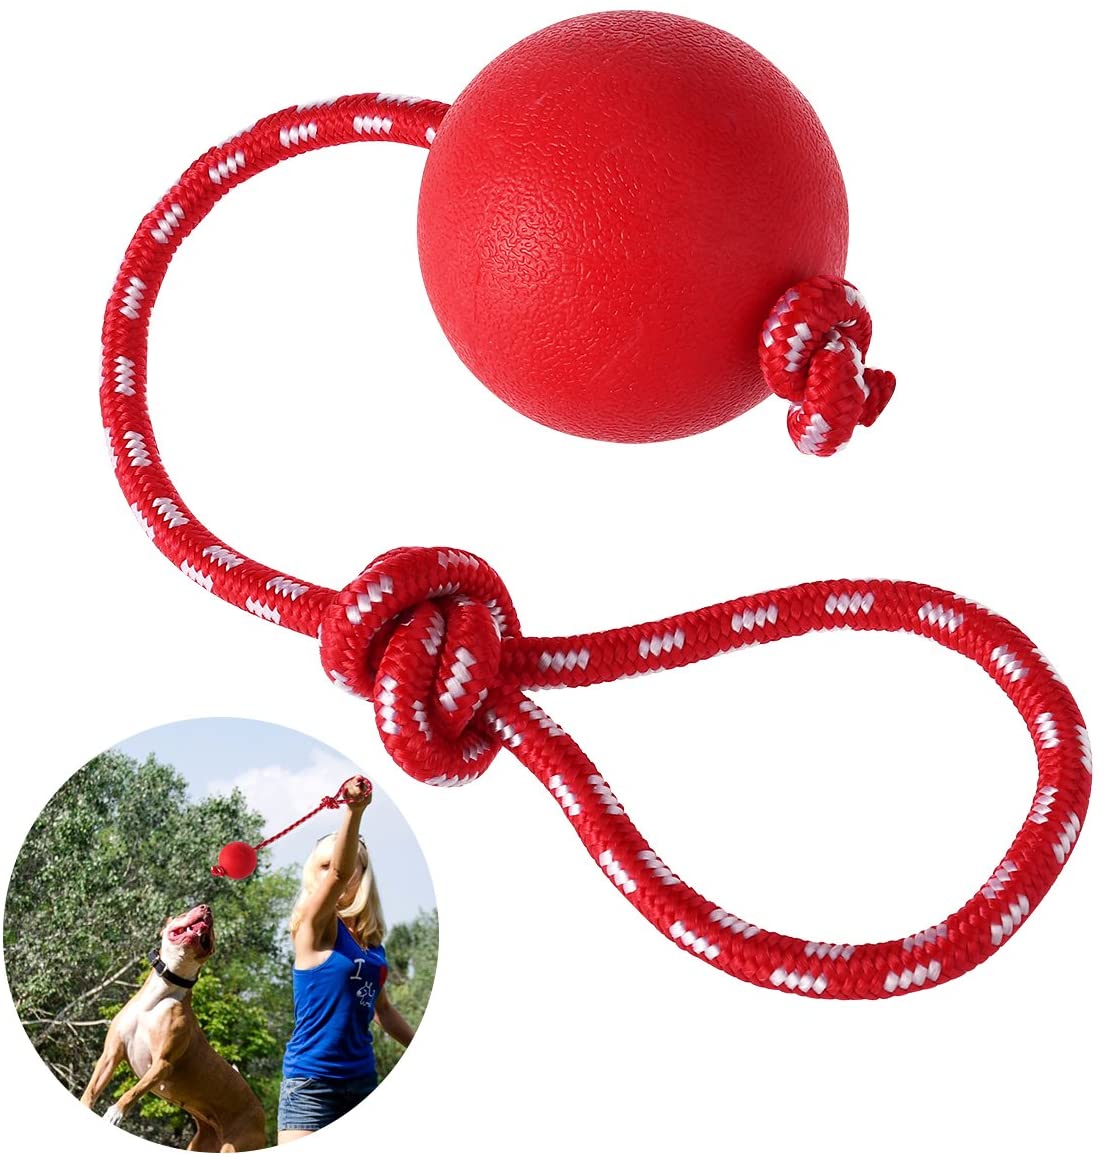  UEETEK Bola de Juguete Masticar Goma de Mascota con la Cuerda, Perro Lanzador de Bola Interactiva para Mascotas Jugando Ejercicio de Entrenamiento, Bola de Diámetro 7.5cm 